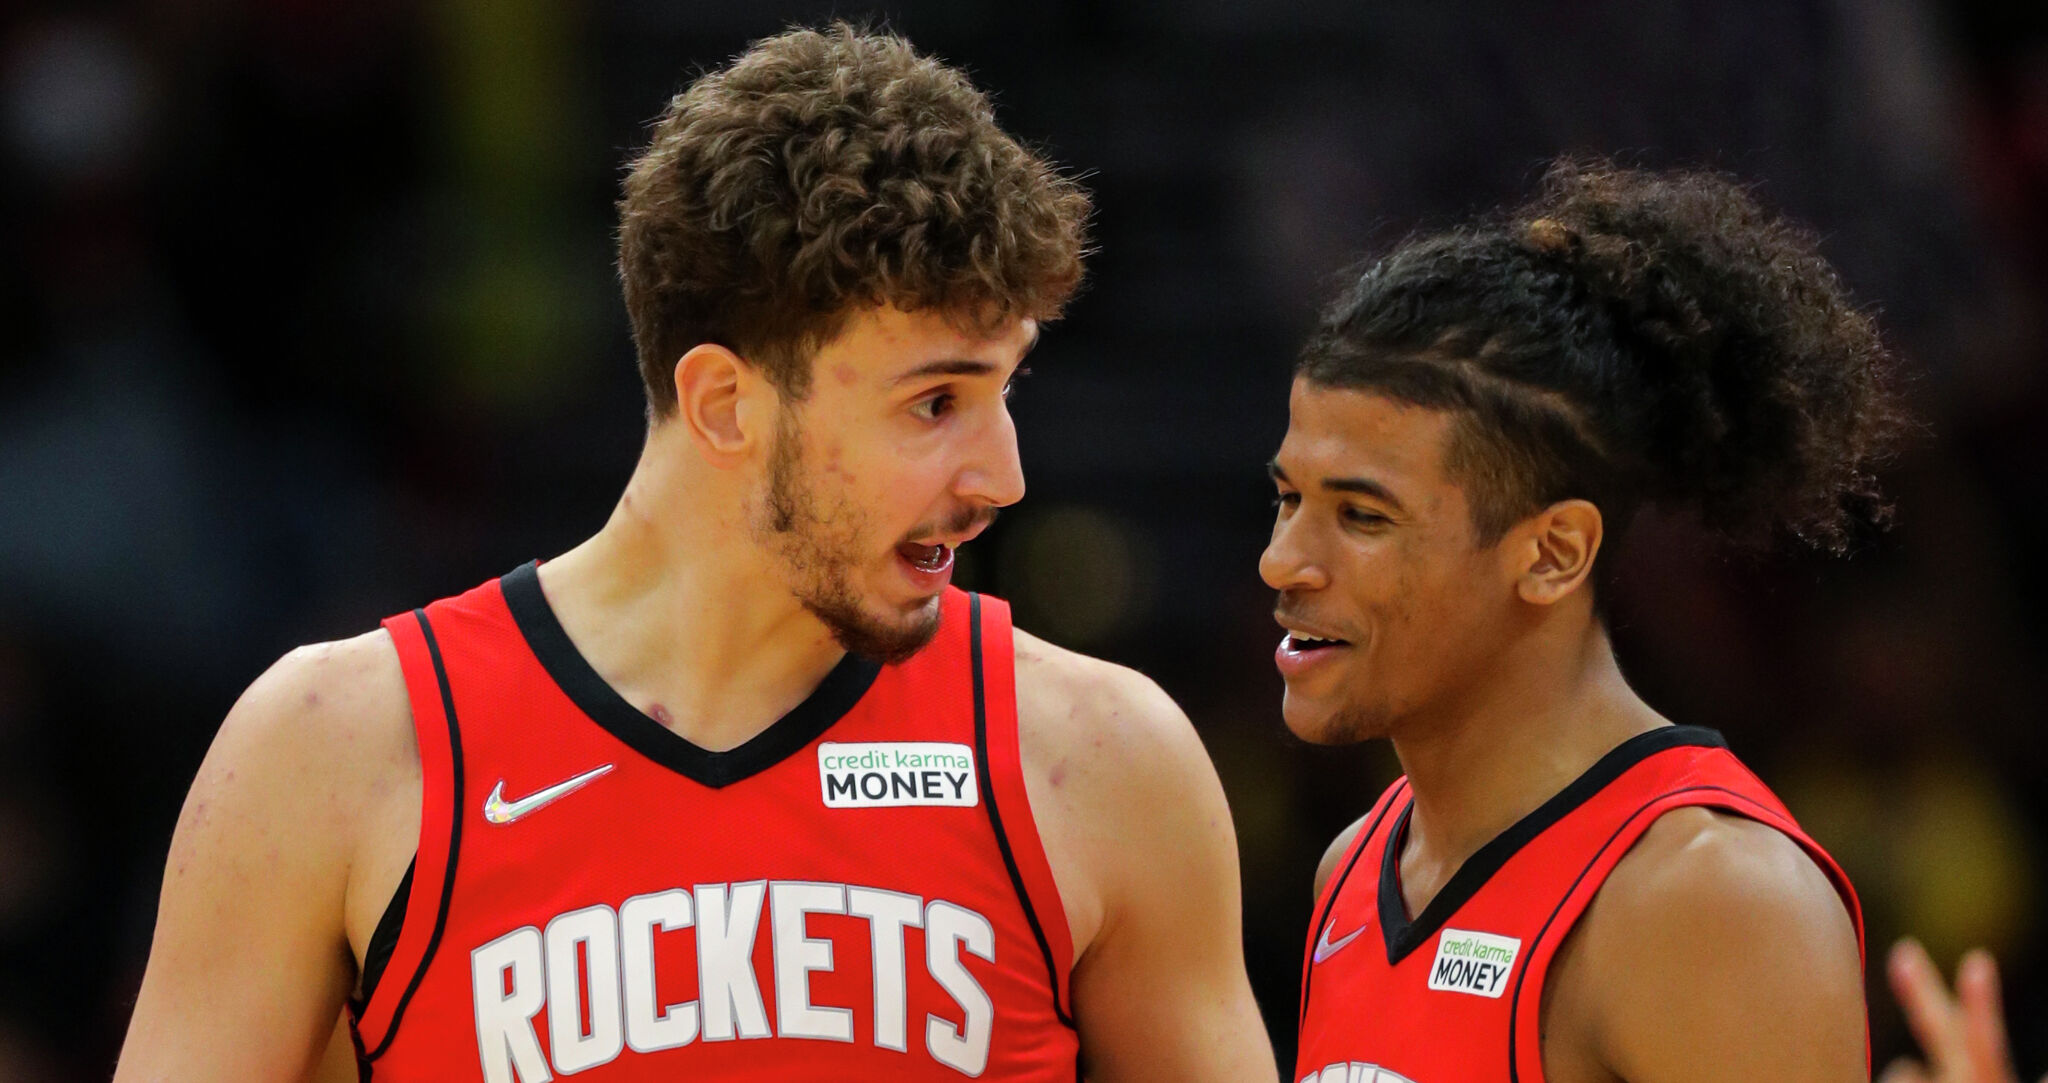 Rockets' rookies Jalen Green and Alperen Sengun betting favorites